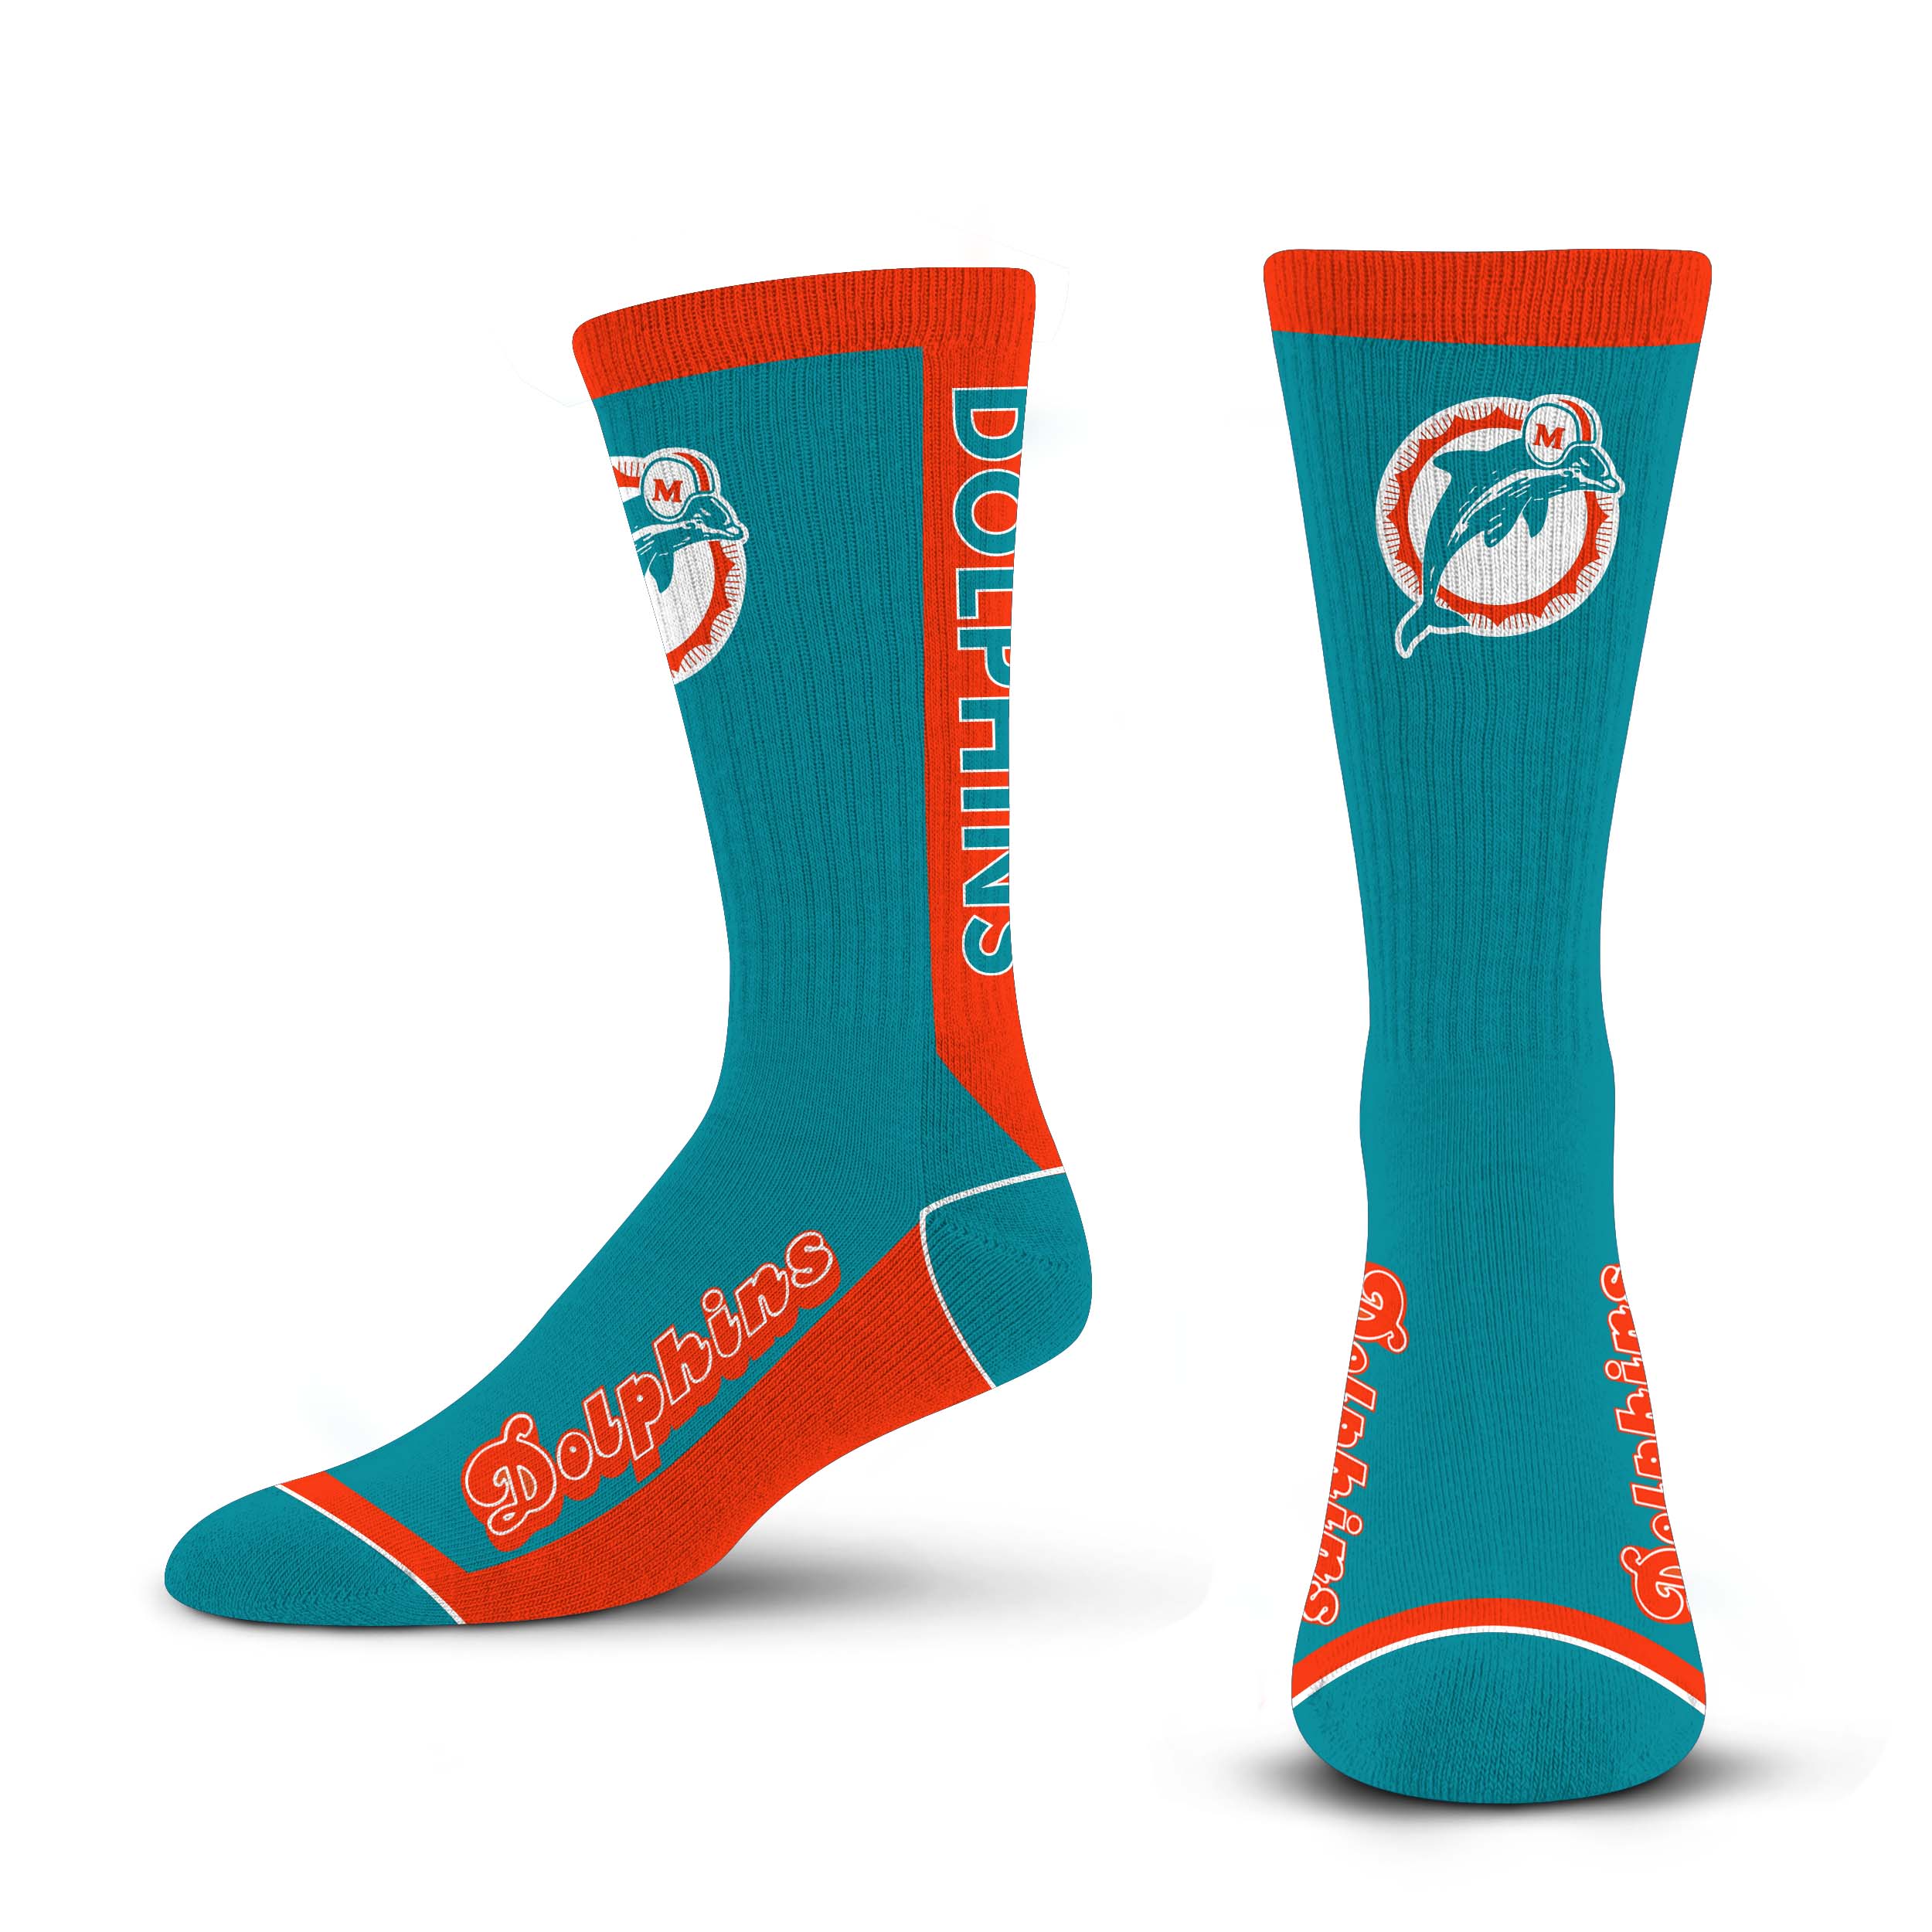 Miami Dolphins Original Logo Retro Socks by For Bare Feet - Aqua/Orange